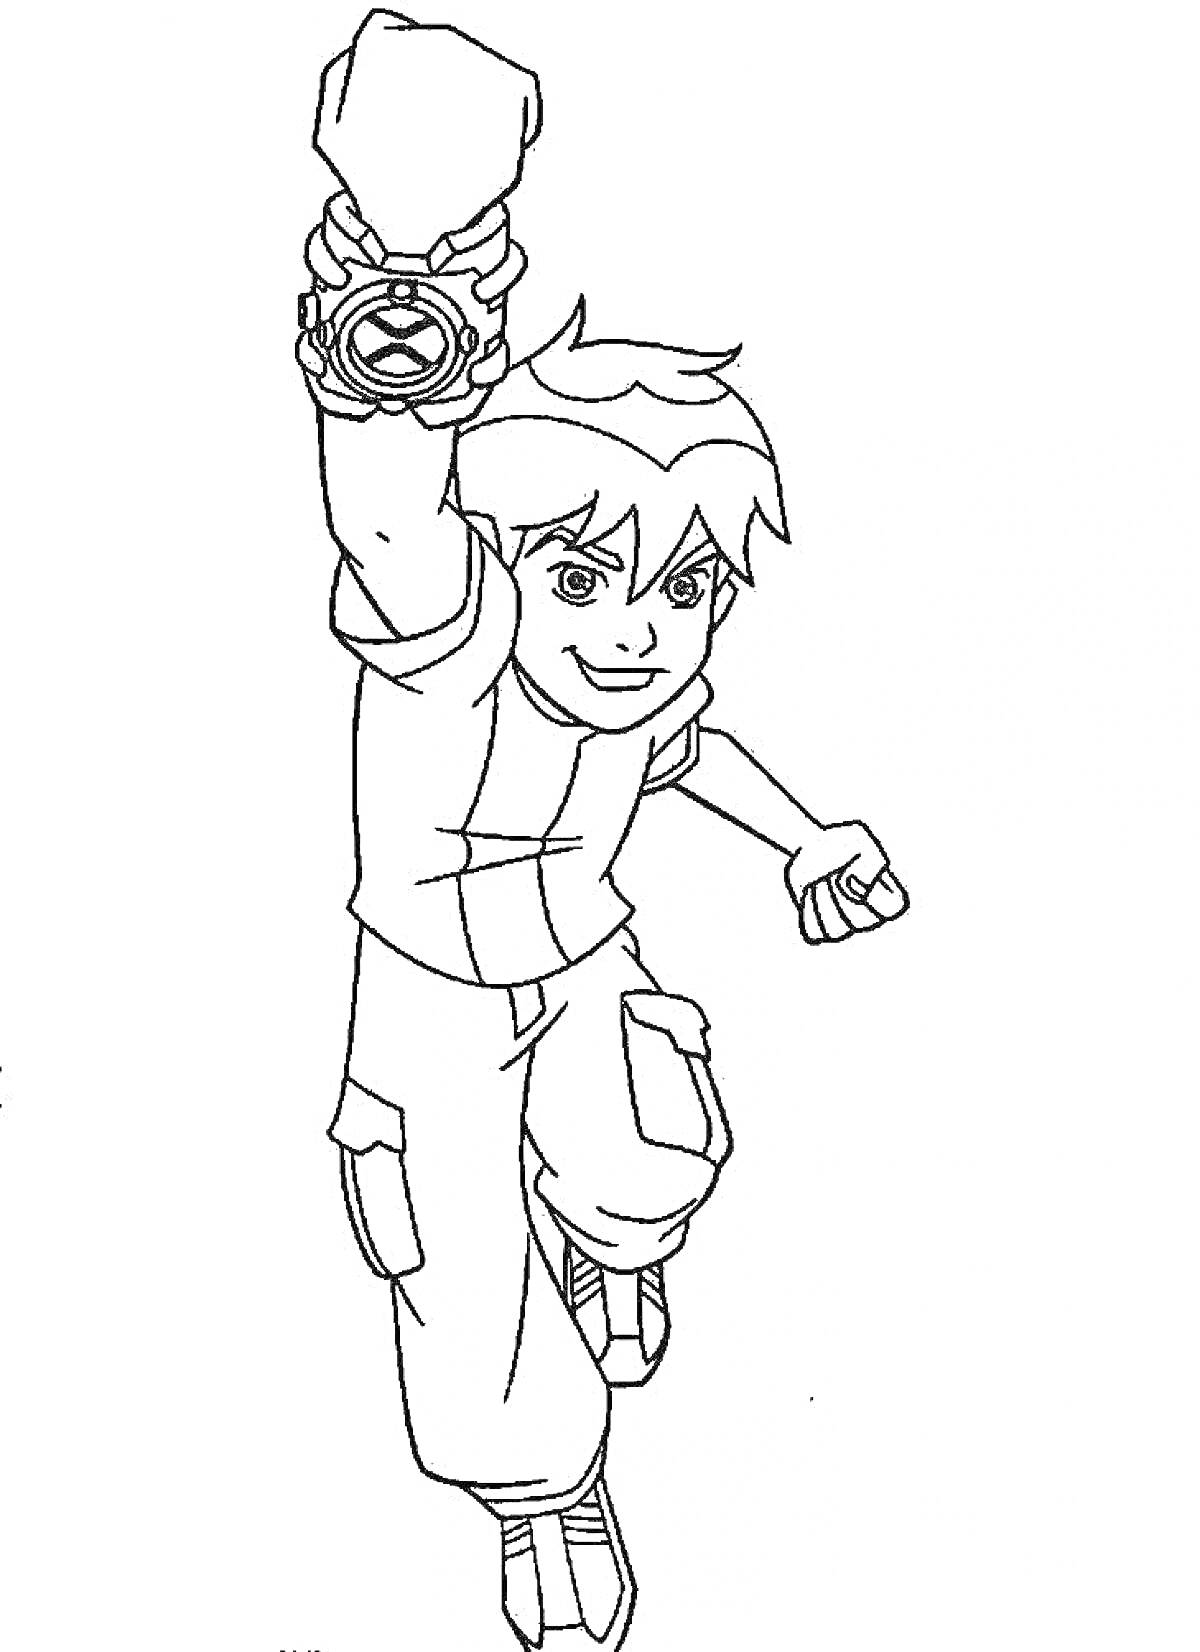 Раскраска Мальчик с поднятой рукой и загадочным устройством на запястье, у которого короткие волосы и одет в футболку и брюки с карманами.